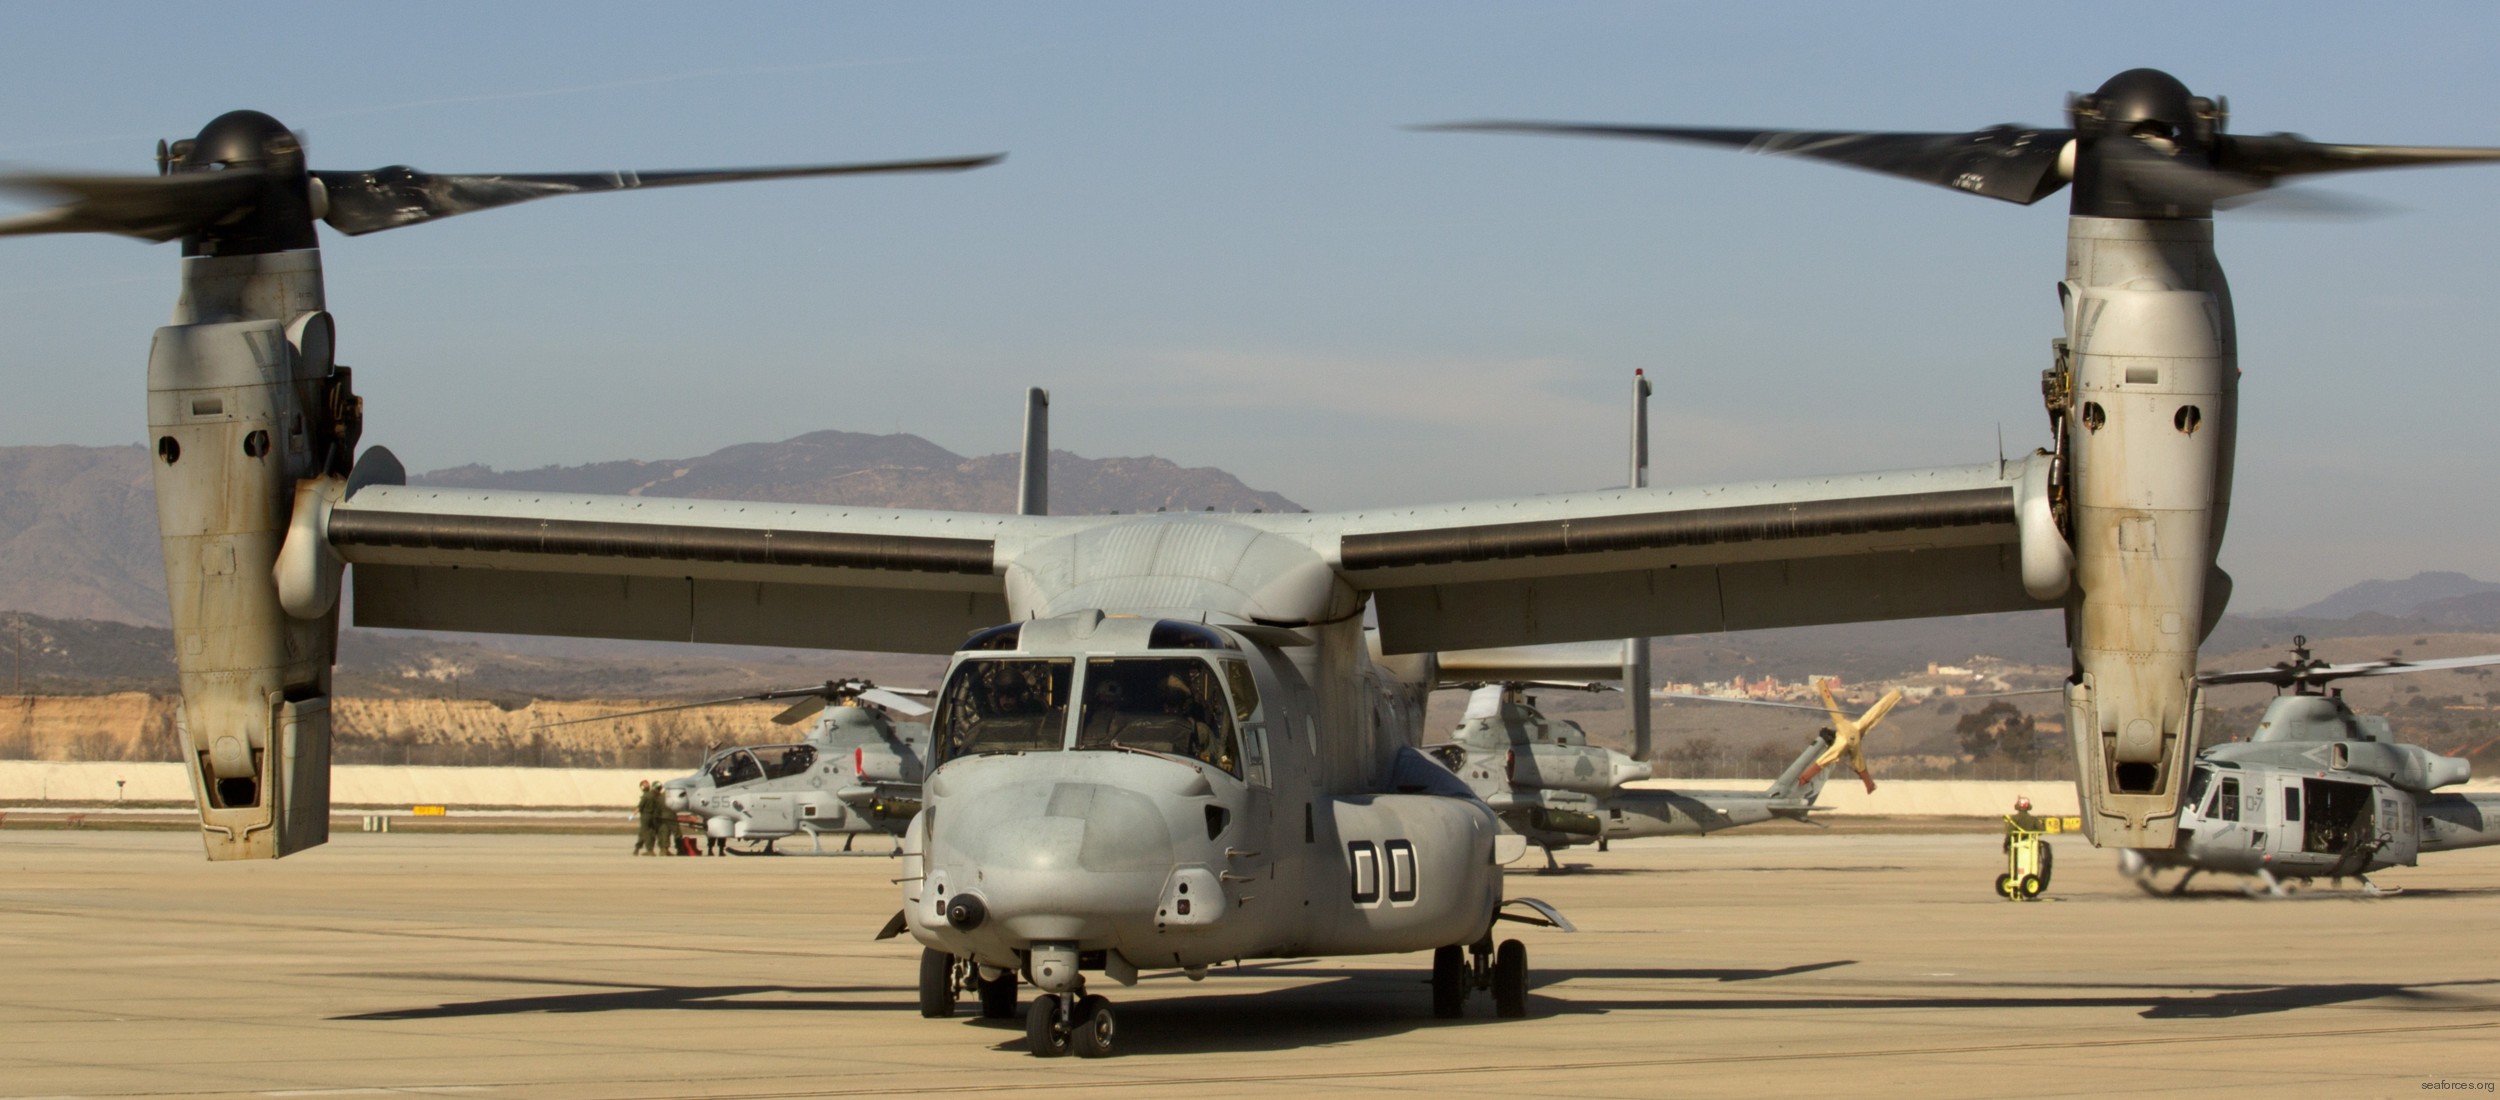 vmm-161 greyhawks mv-22b osprey marine medium tiltrotor squadron usmc 114 camp pendleton california